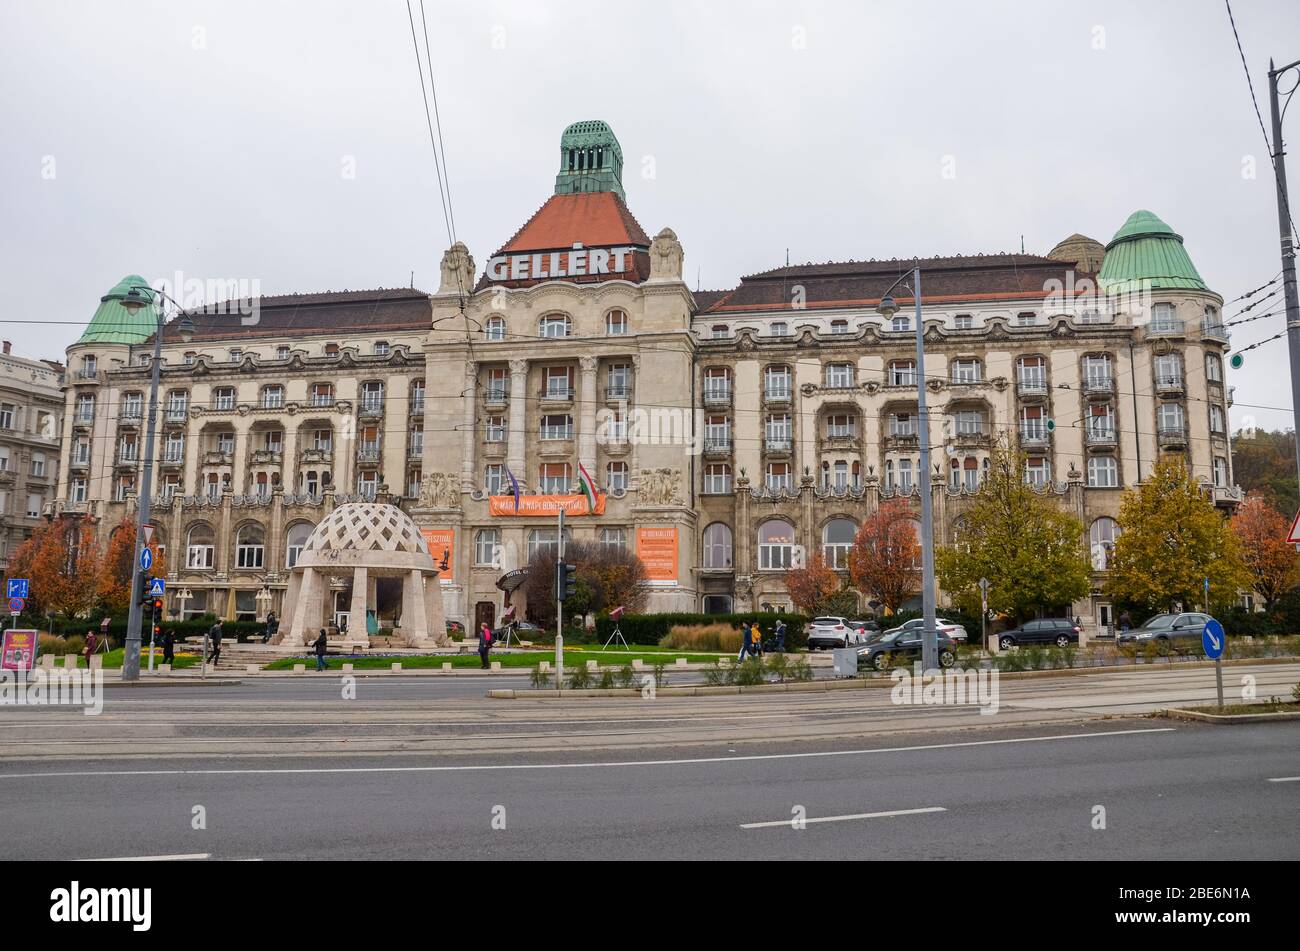 Budapest, Ungarn - 6. November 2019: Das berühmte Danubius Hotel Gellert in der ungarischen Hauptstadt. Jugendstil-Hotelgebäude mit angrenzender Straße und Straße. Bewölktes Tag, horizontales Foto. Stockfoto